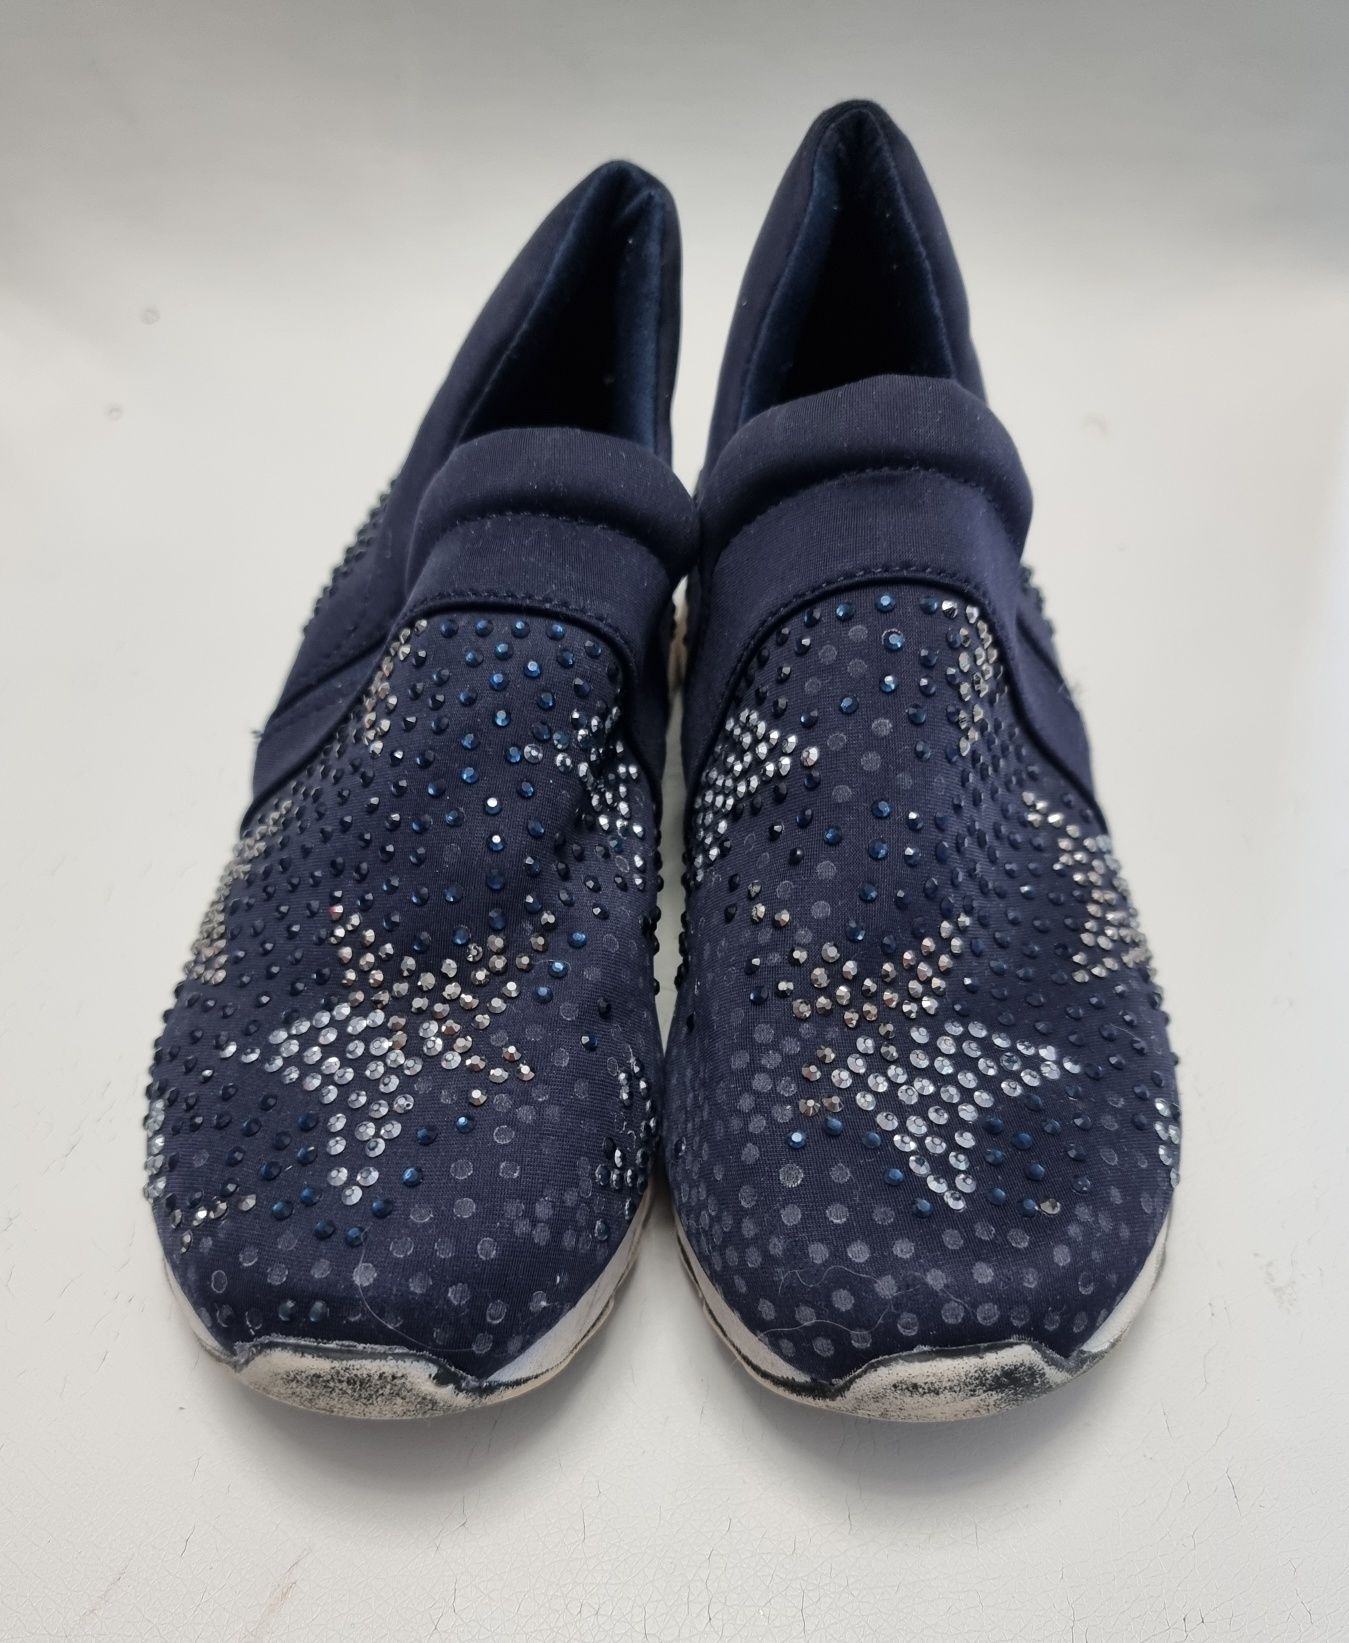 Buty granatowe adidasy dziecięce w gwiazdki rozmiar 34 wkładka 21,5cm